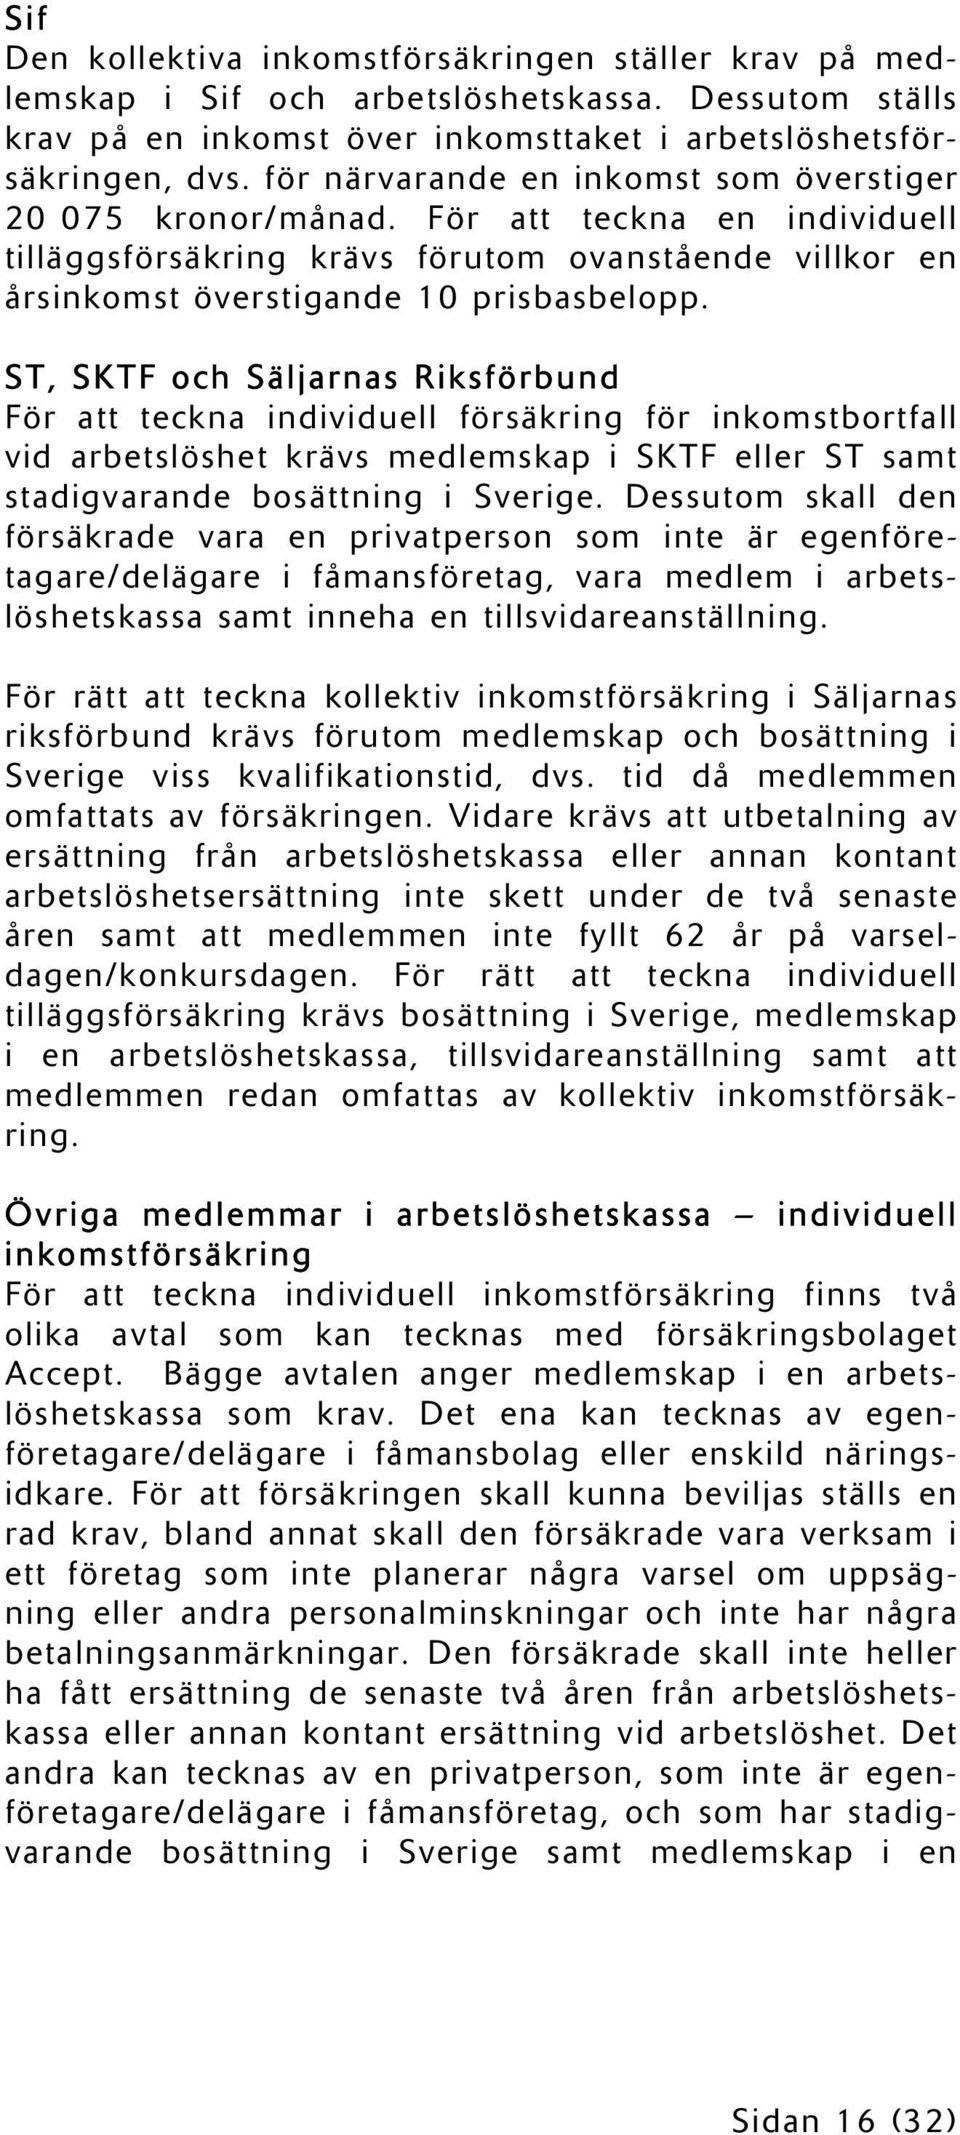 ST, SKTF och Säljarnas Riksförbund För att teckna individuell försäkring för inkomstbortfall vid arbetslöshet krävs medlemskap i SKTF eller ST samt stadigvarande bosättning i Sverige.